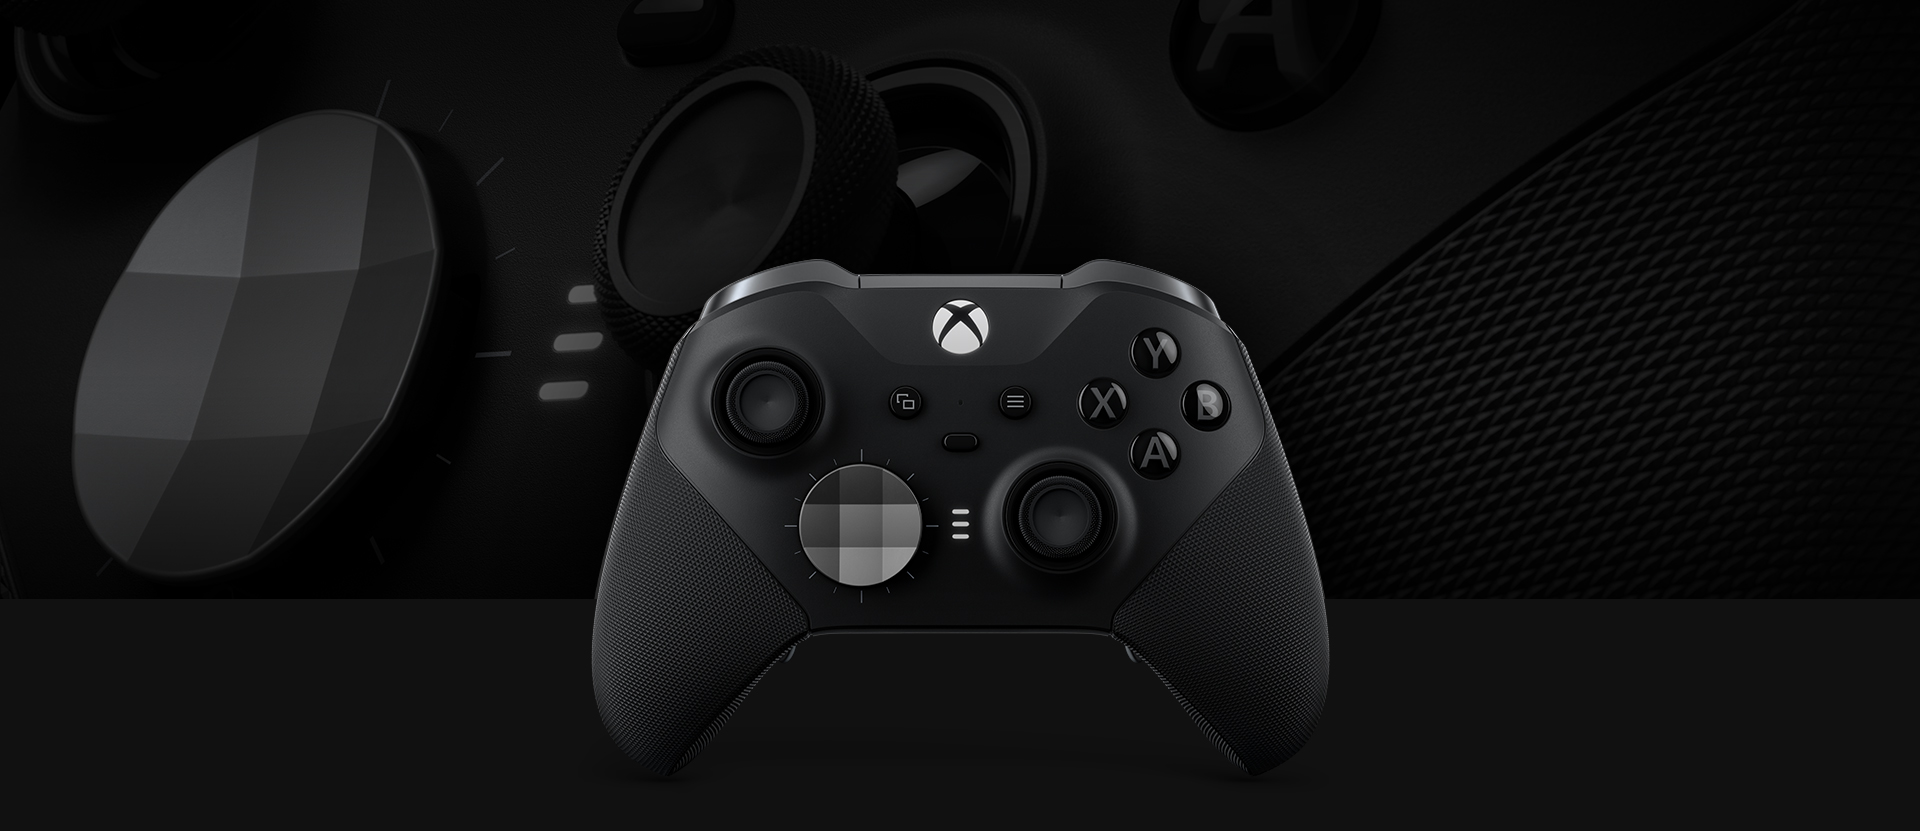 As imagens vazaram: novo controle Elite Series do Xbox revela detalhes muito desejados